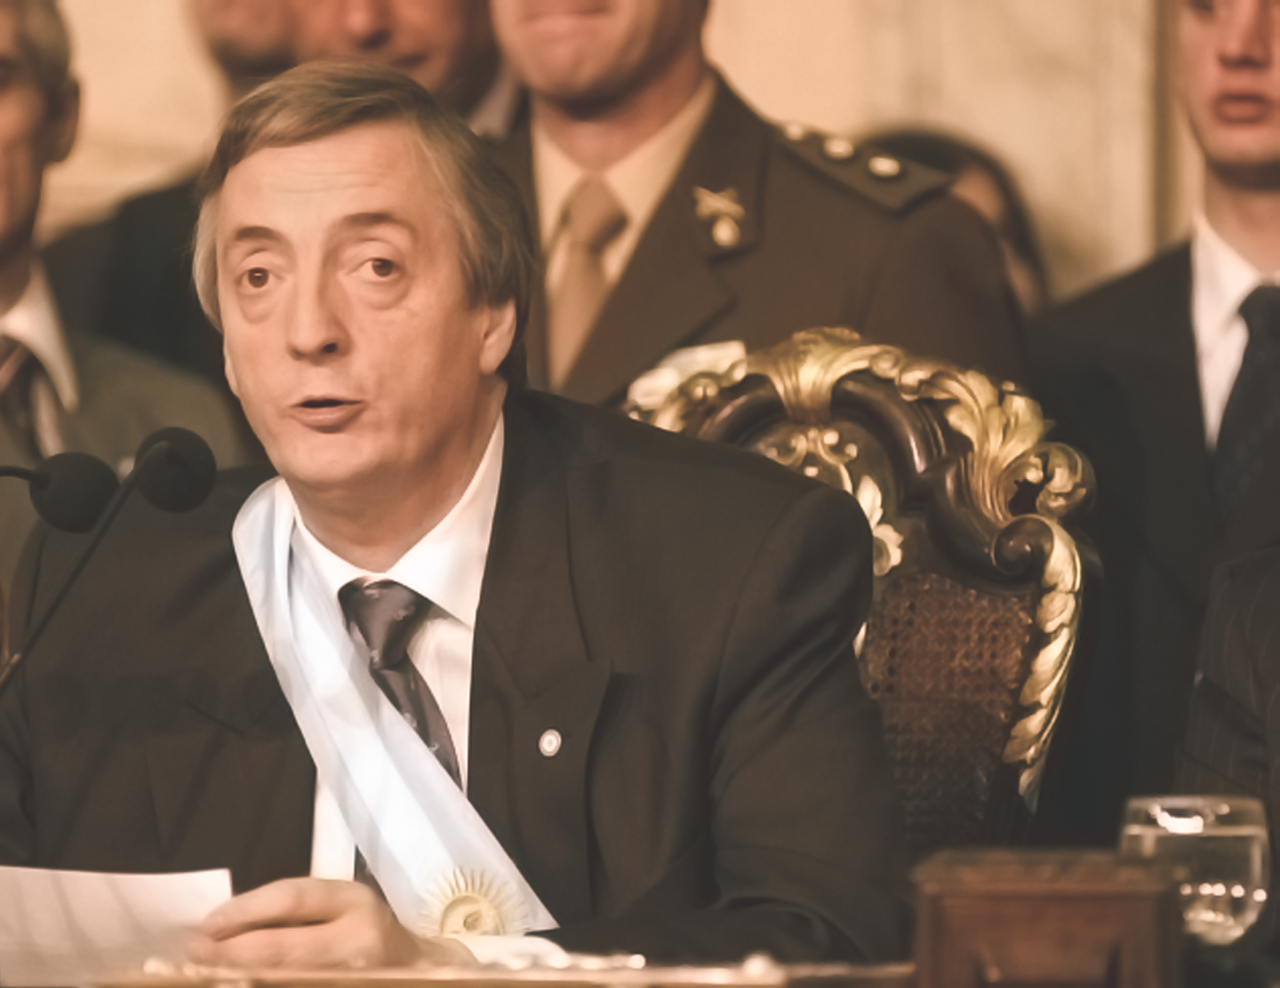 25 DE MAYO 2003. Néstor Kirchner asume la Presidencia